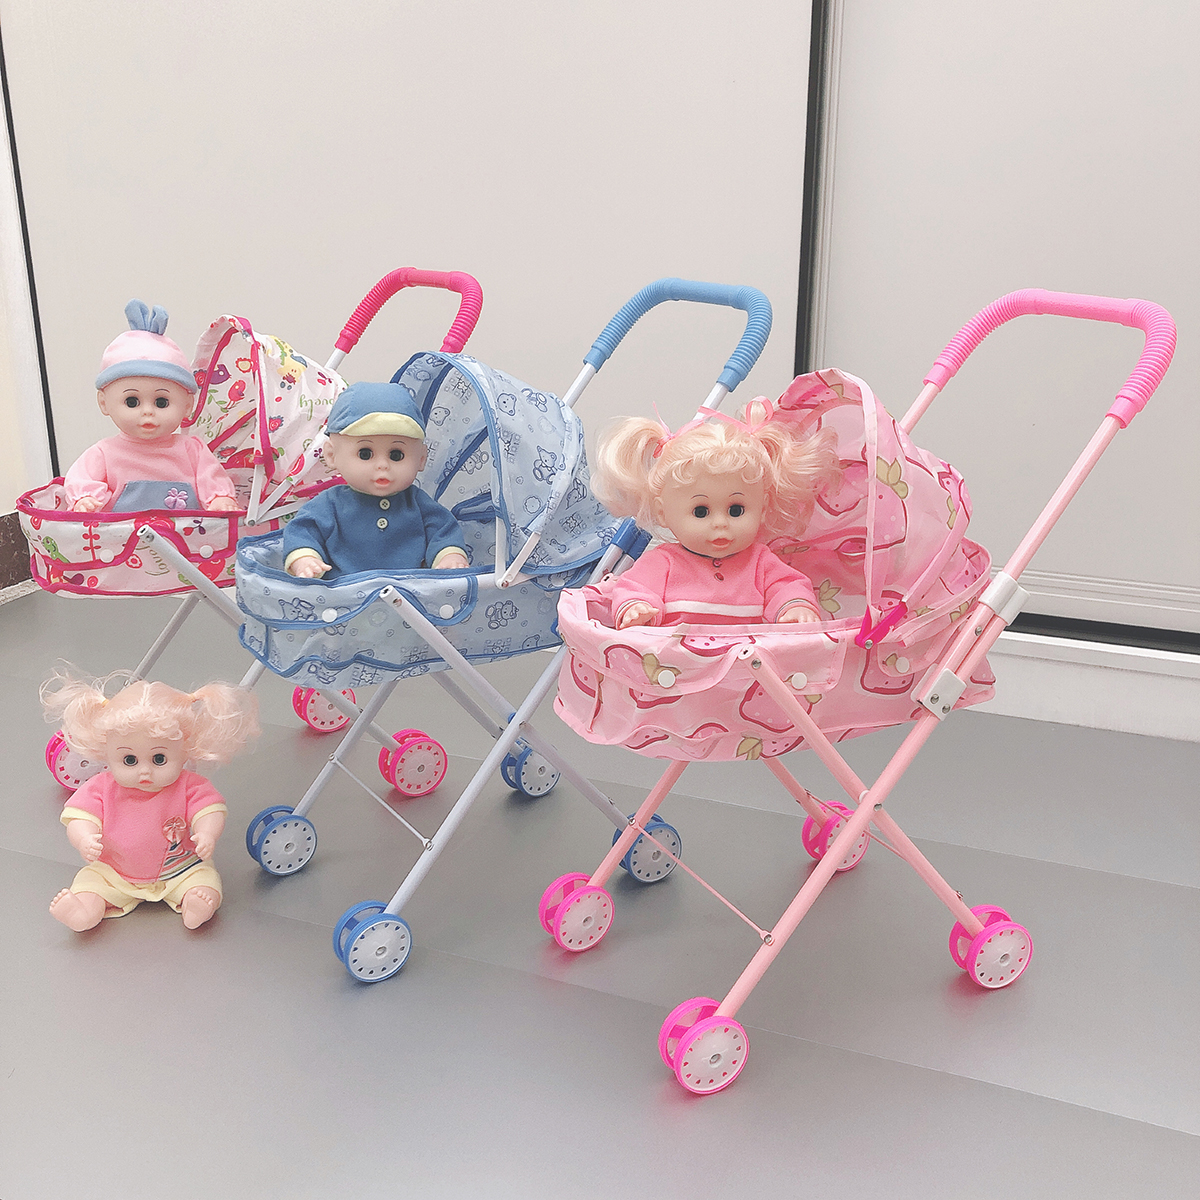 儿童玩具推车带娃娃发声男女童女孩过家家玩具手推车宝宝生日礼物